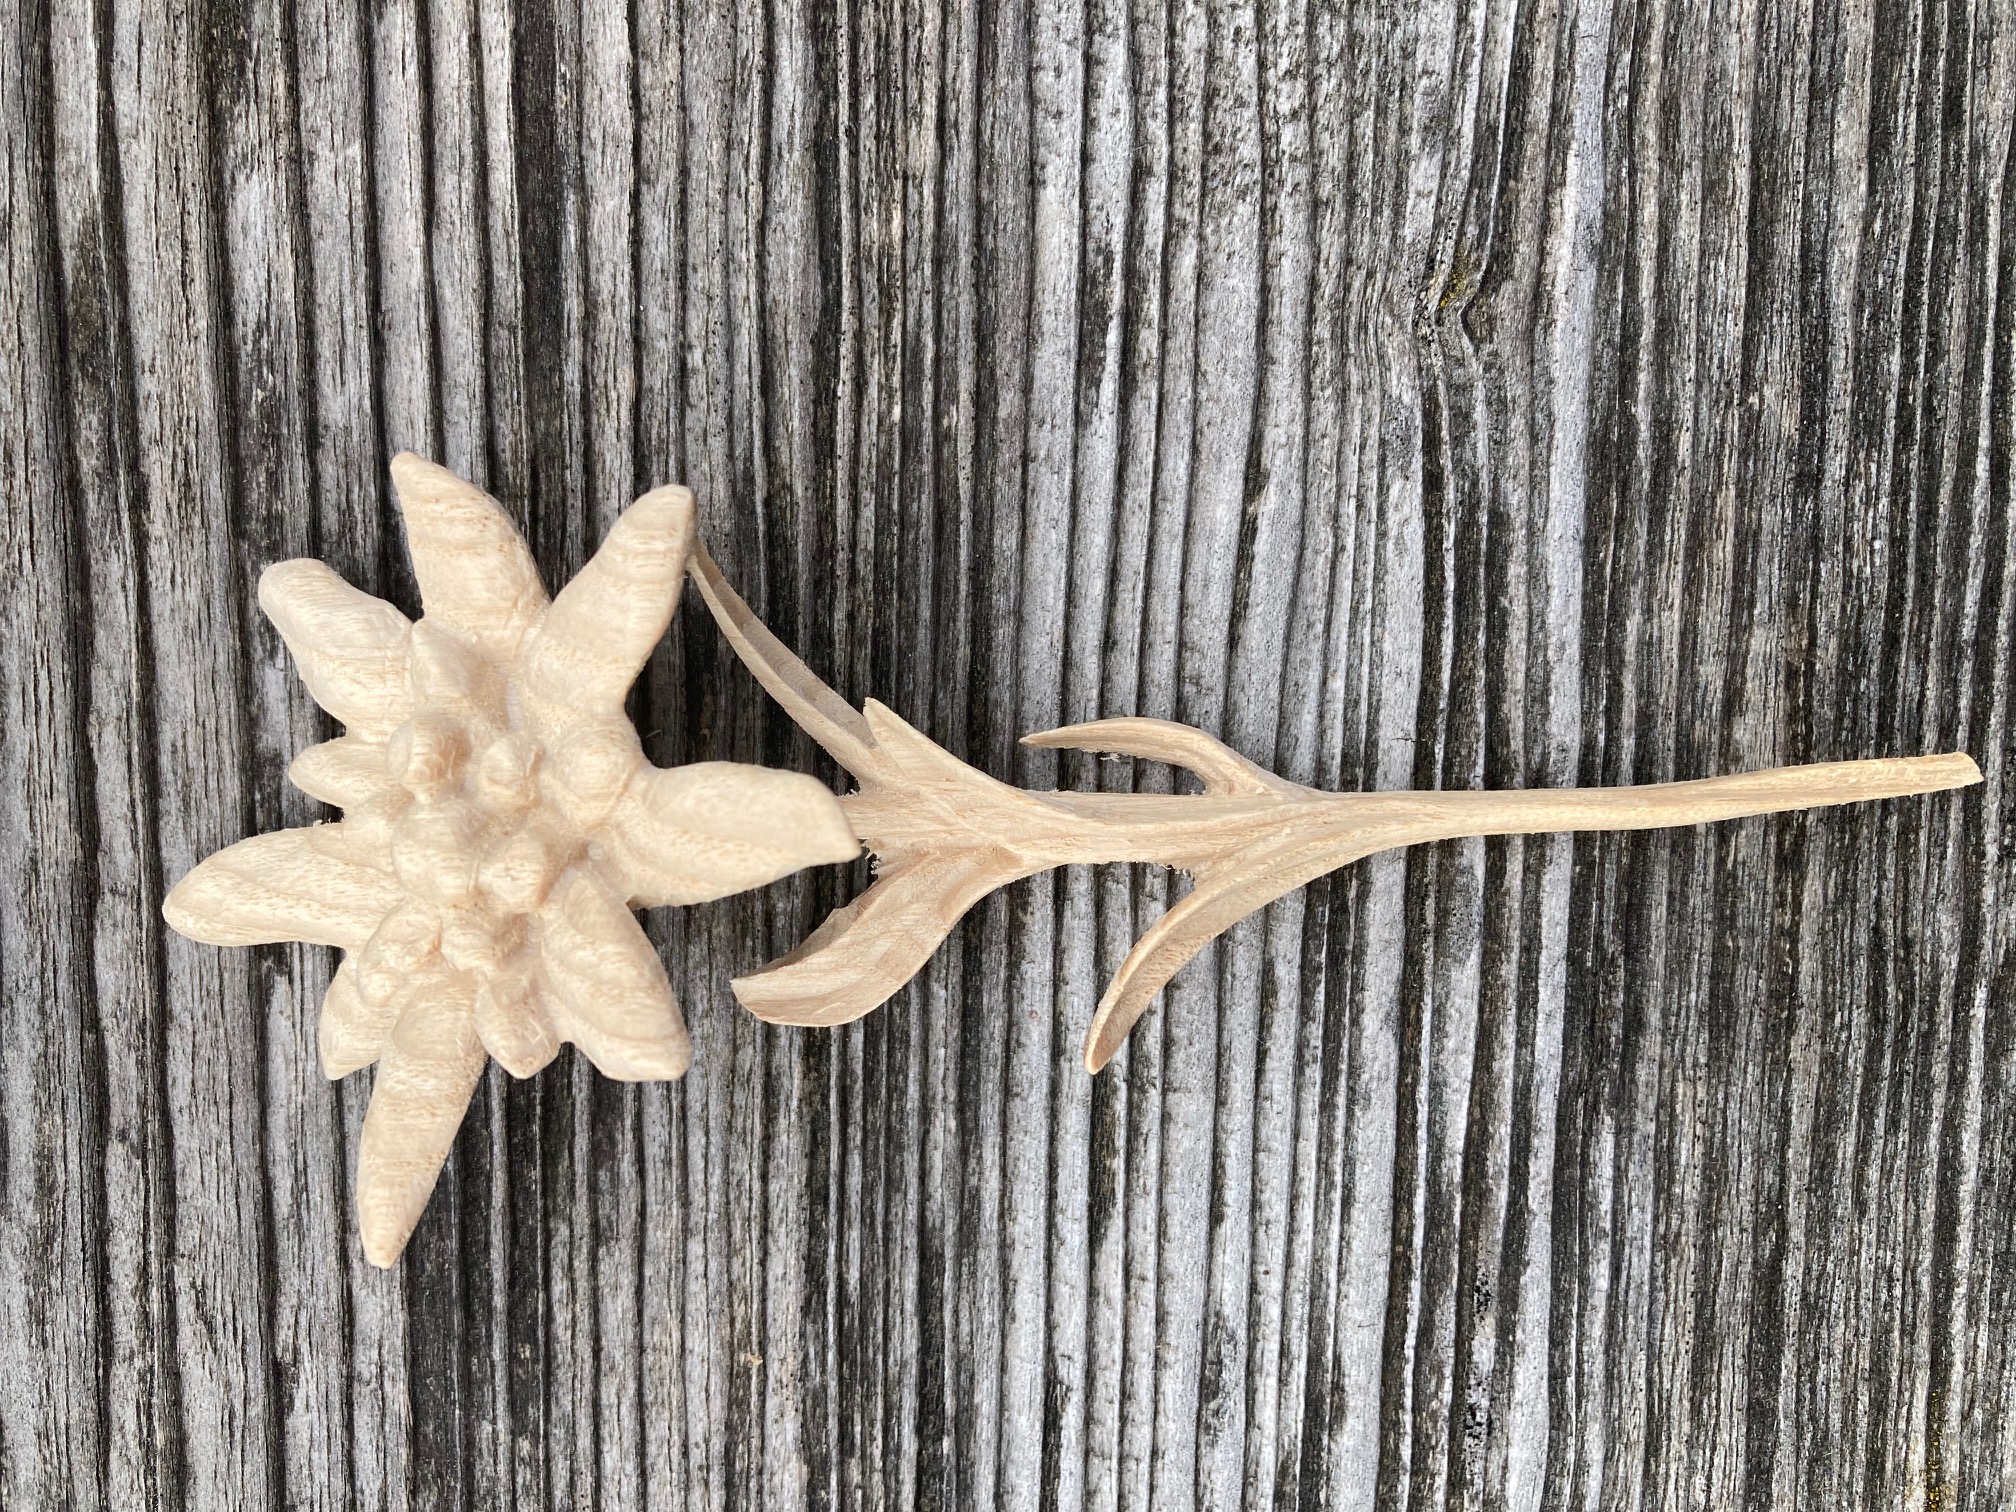 Edelweißblüte aus Holz geschnitzt z. B. für den Hut